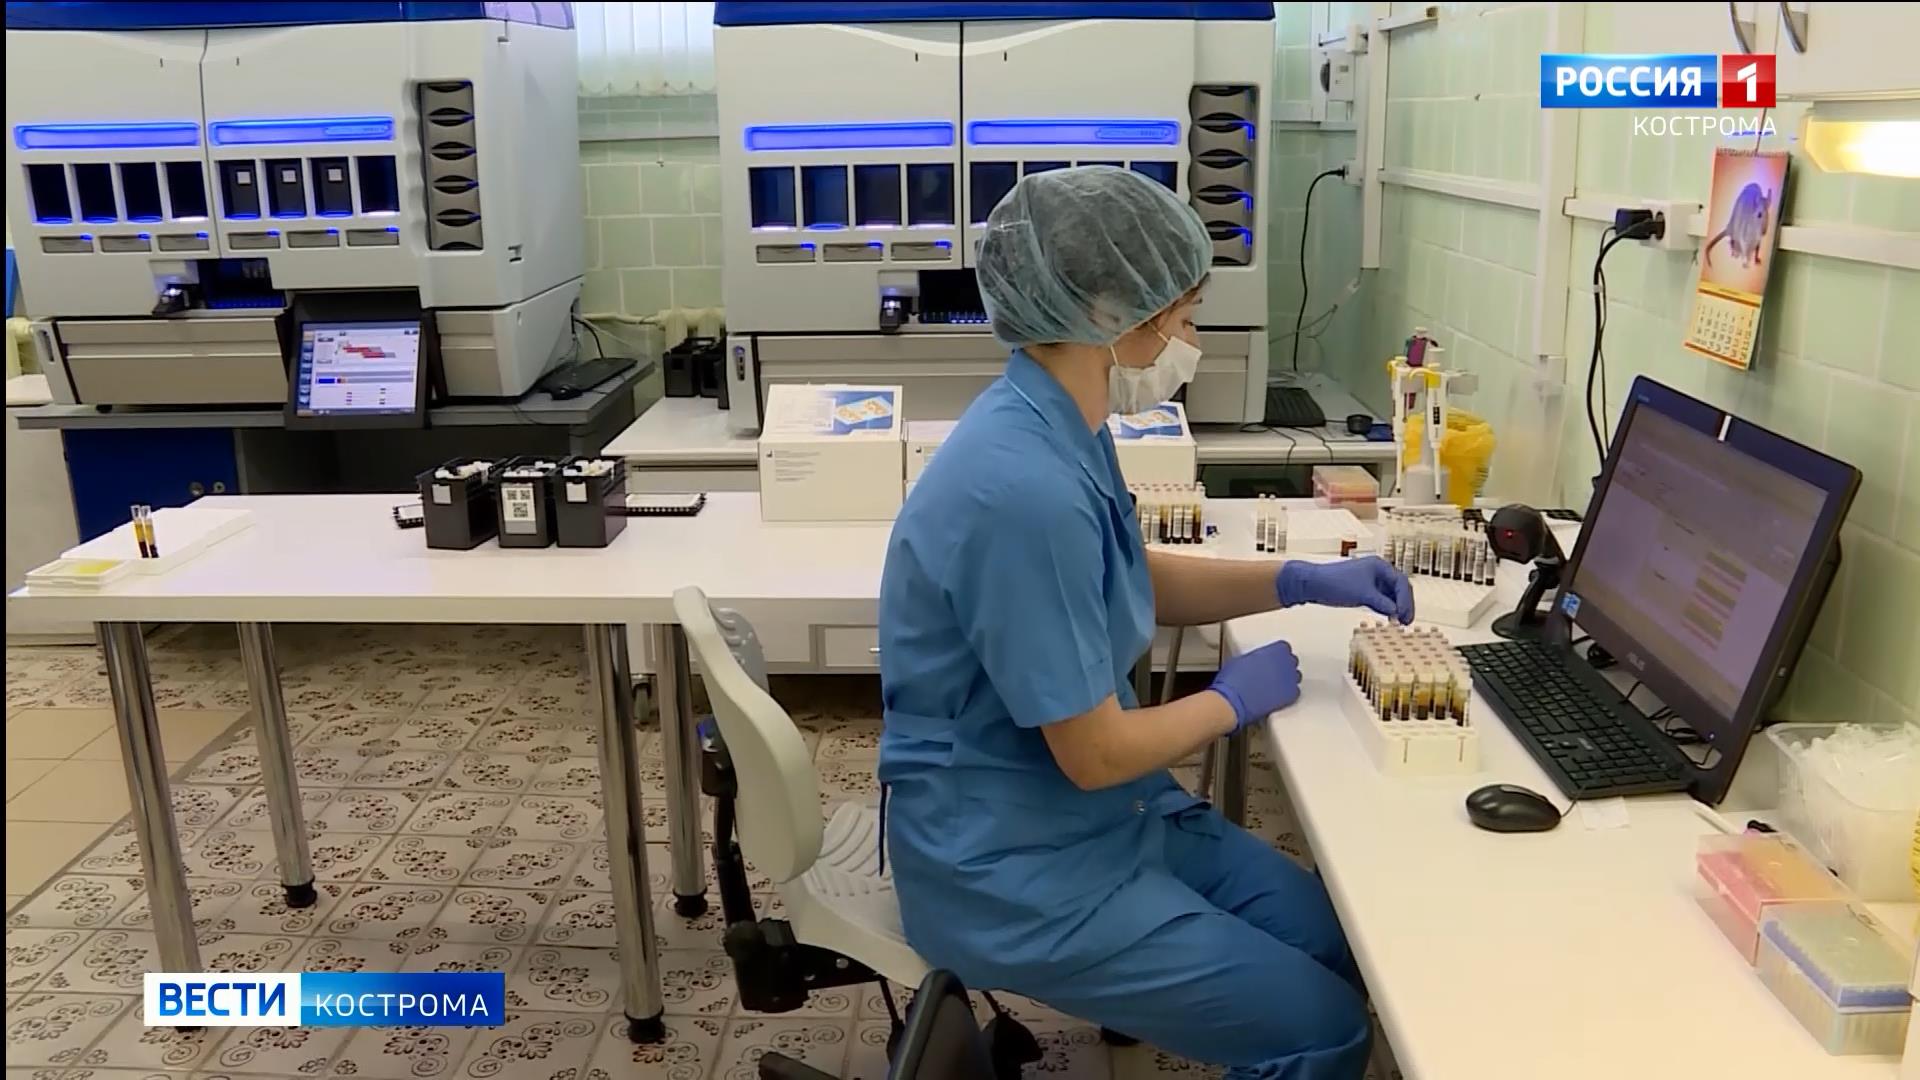 Статистика: вторая коронавирусная тысяча в Костромской области прибыла за 40 дней